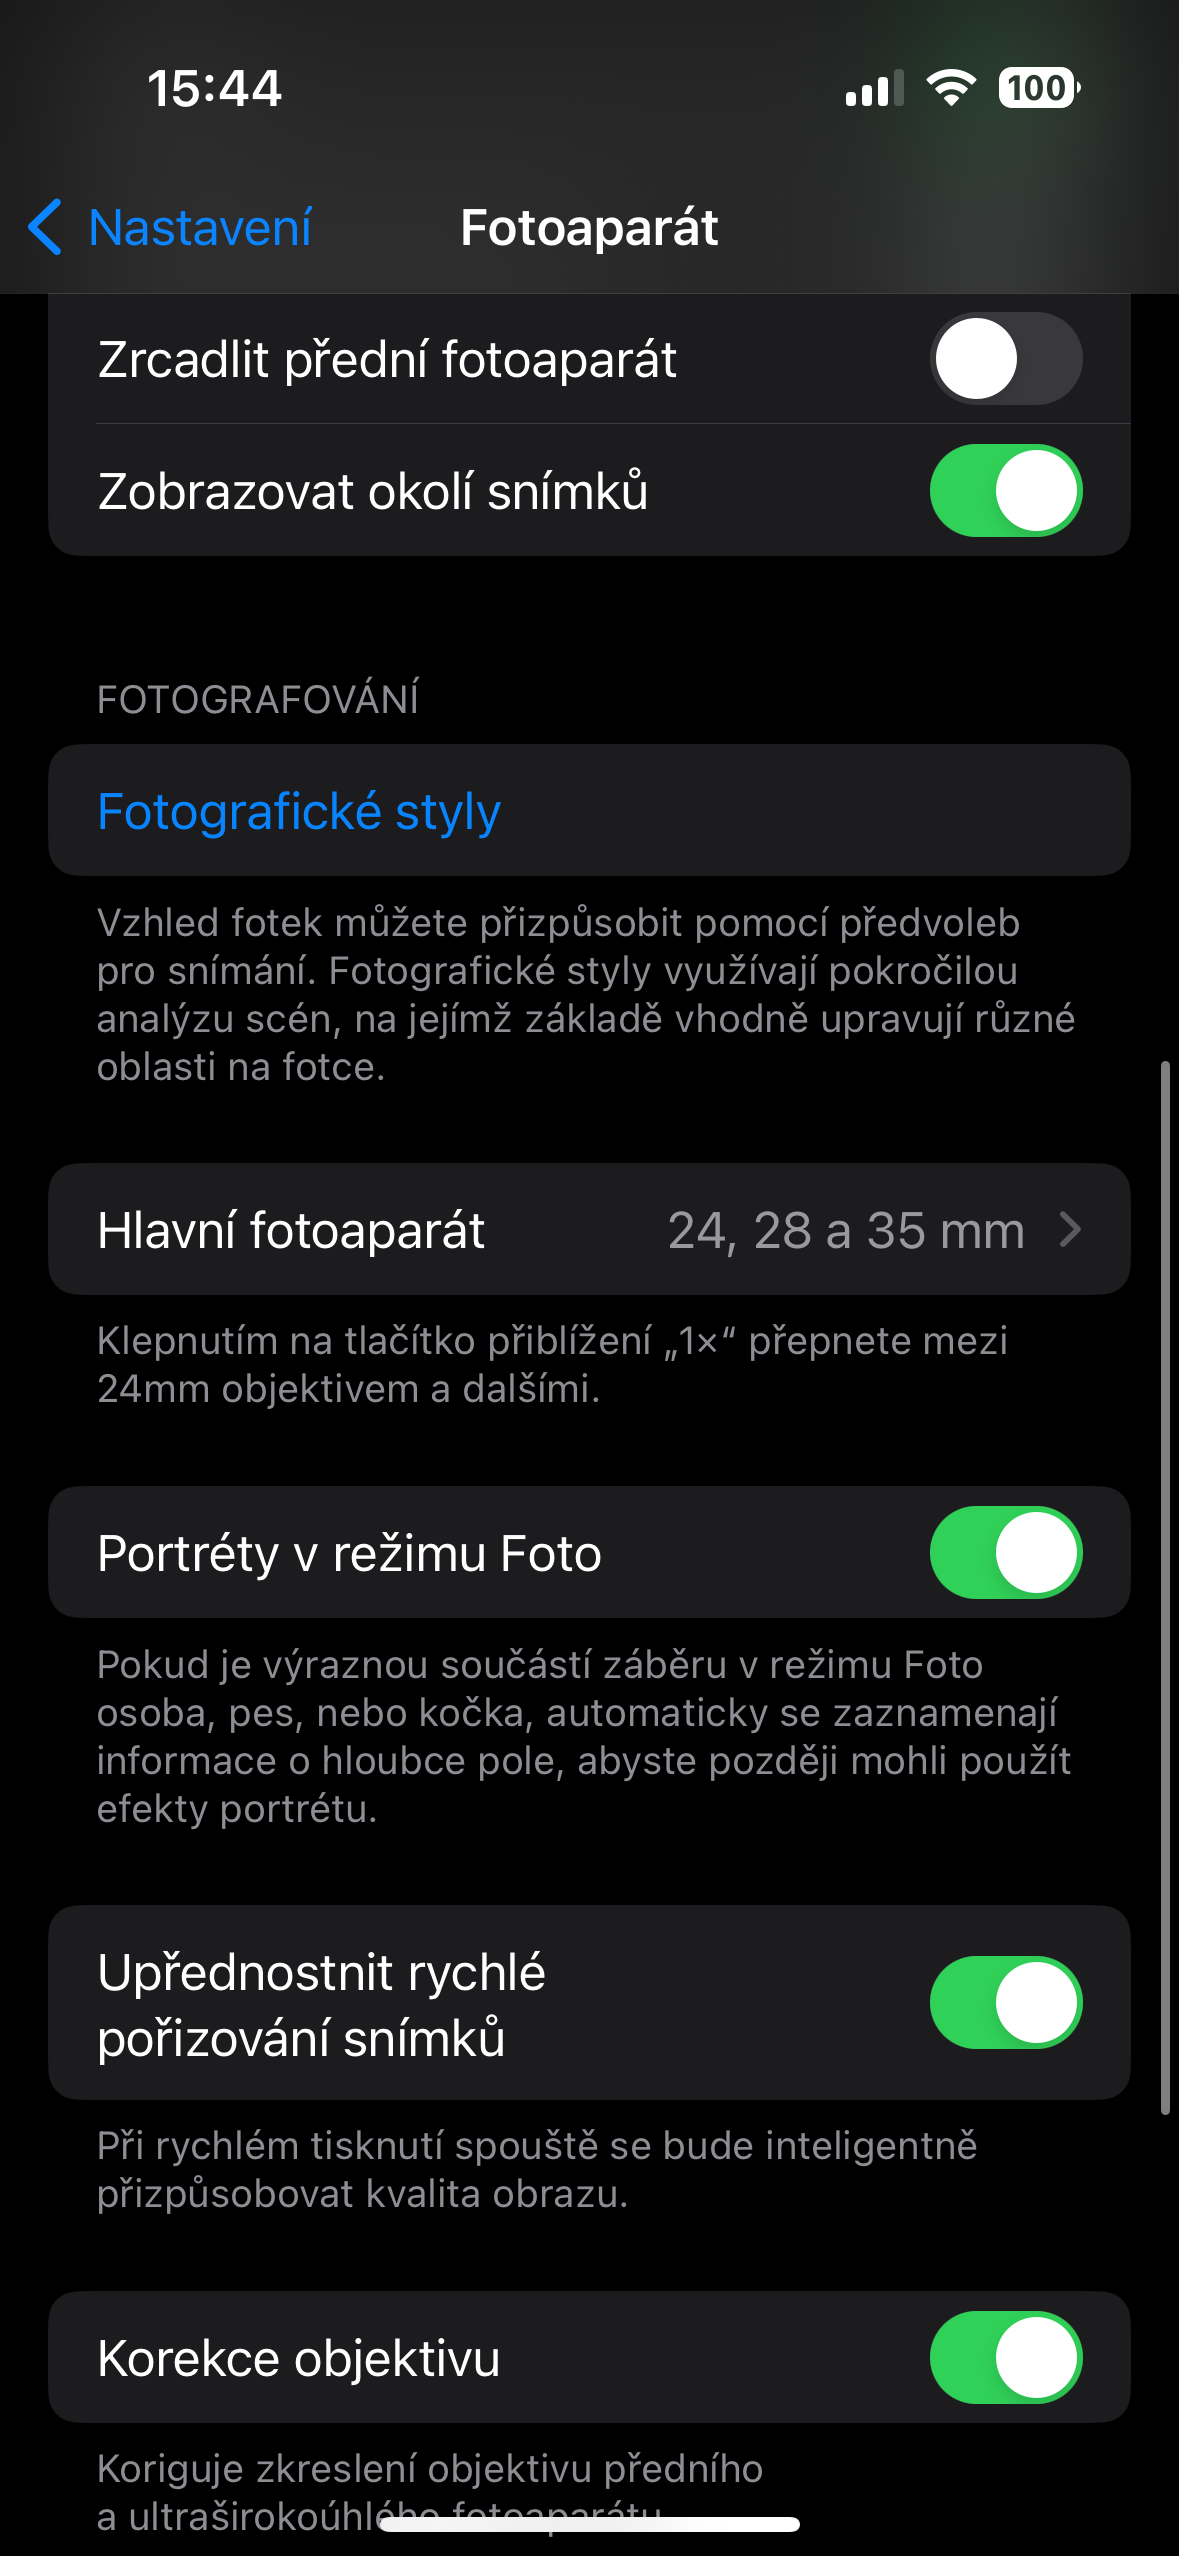 ohnisková vzdálenost mobilenet.cz radí